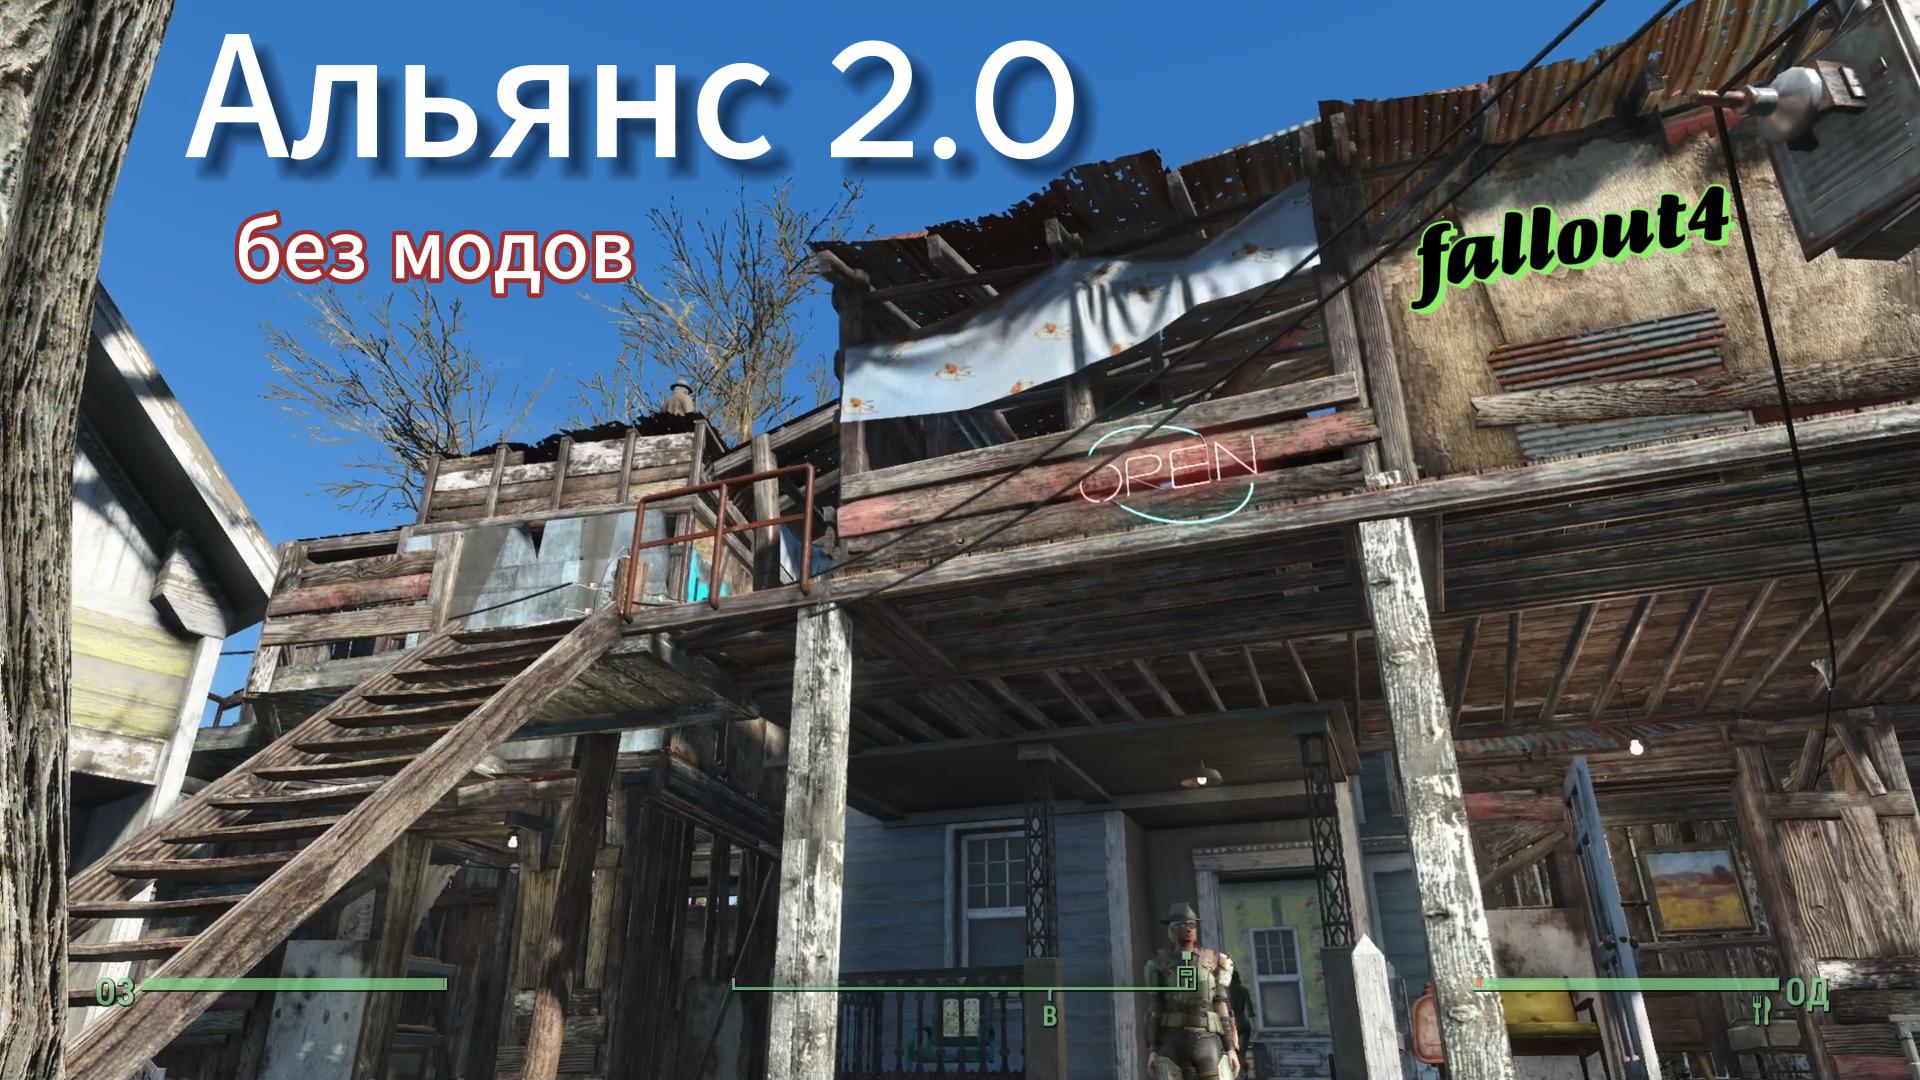 Fallout 4. Альянс 2.0-Обновление(Стройка без Модов)